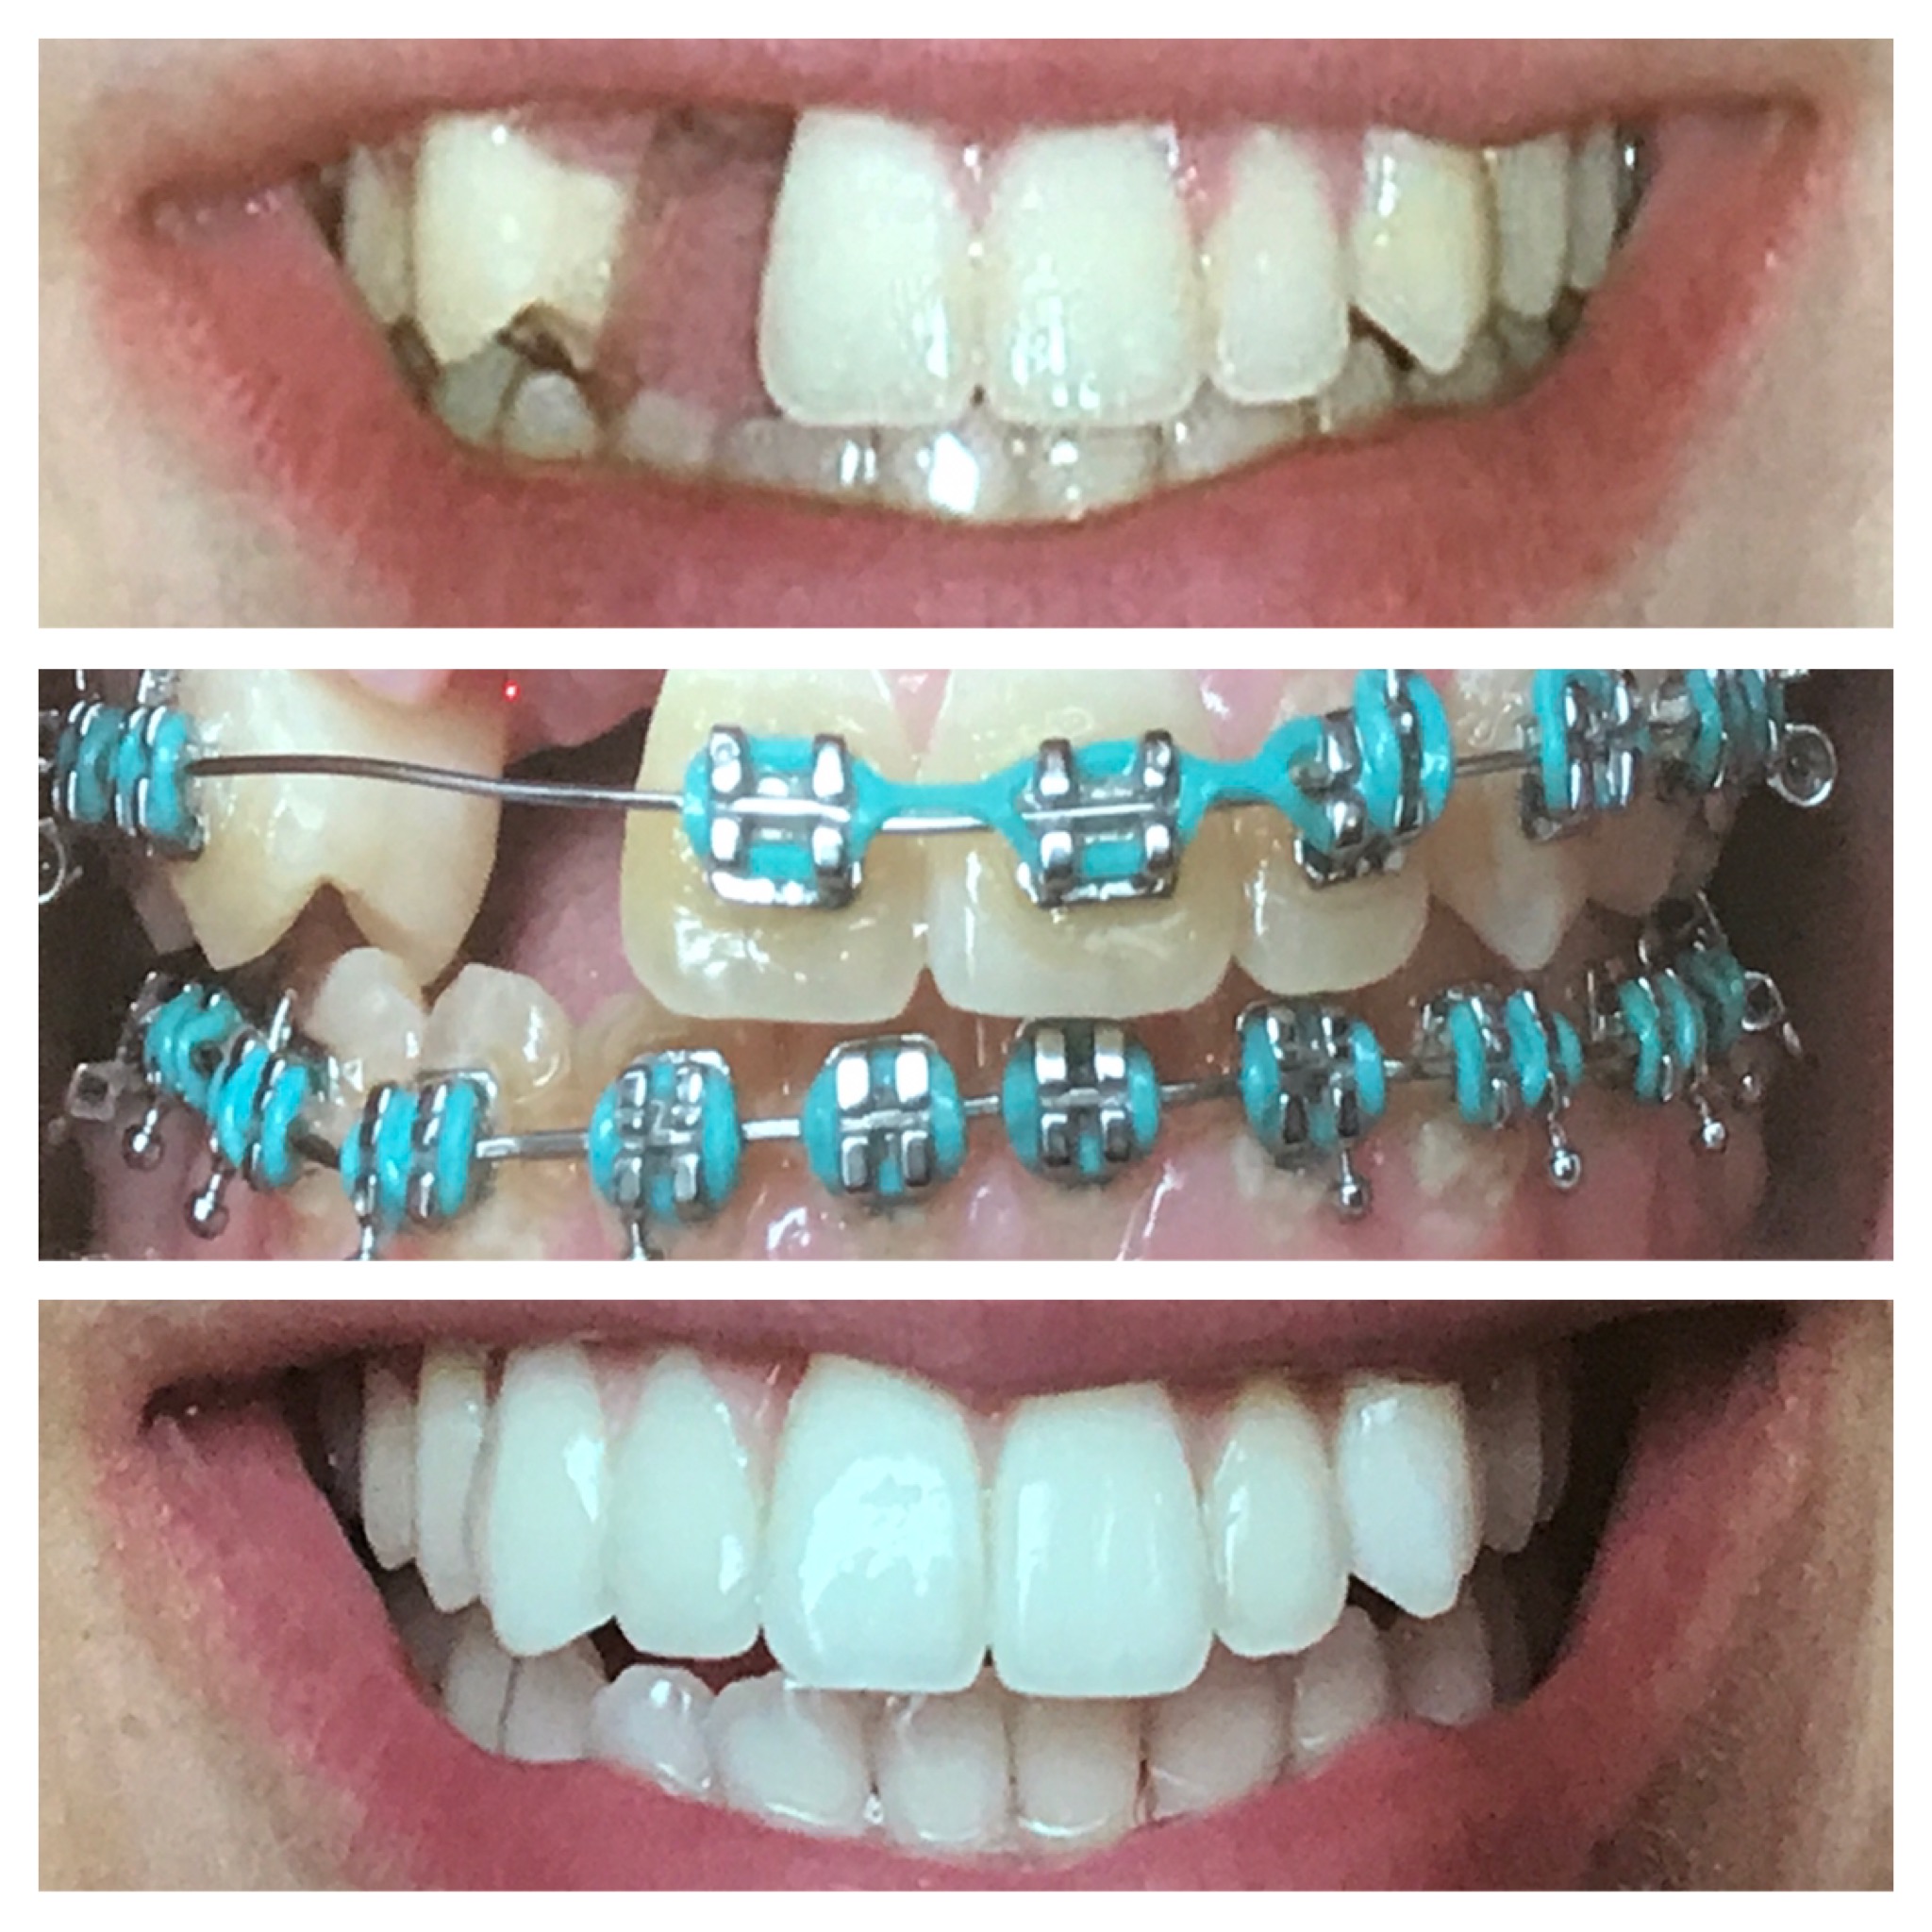 Kieferorthopädische Behandlung zur Begradigung aller Zähne.